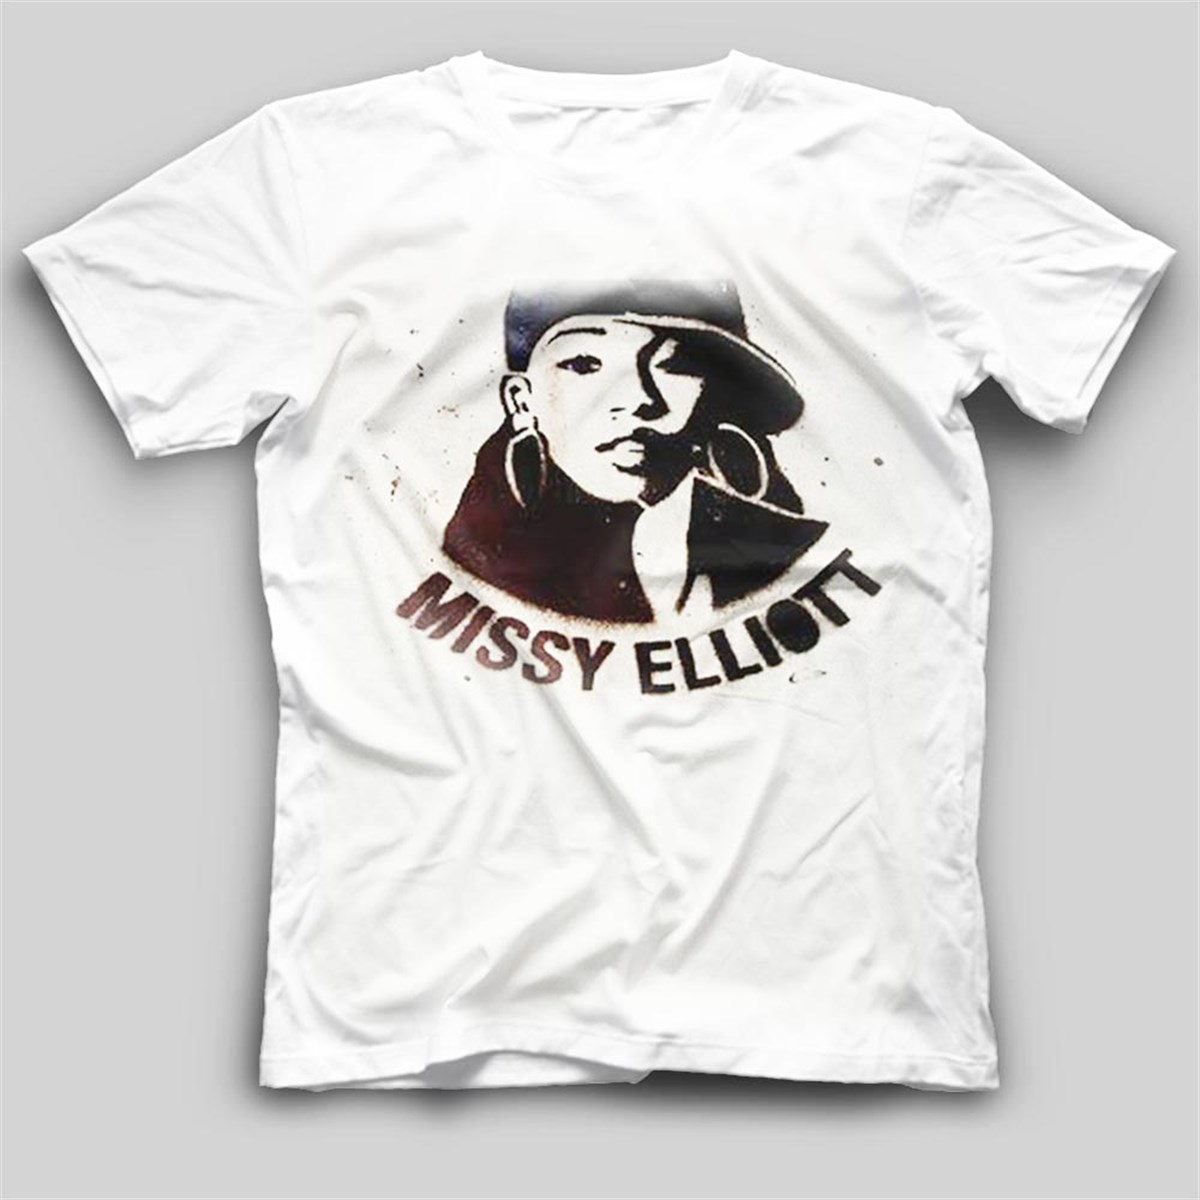 Missy Elliott Kids T-Shirt | Missy Elliott Unisex Kids Tees